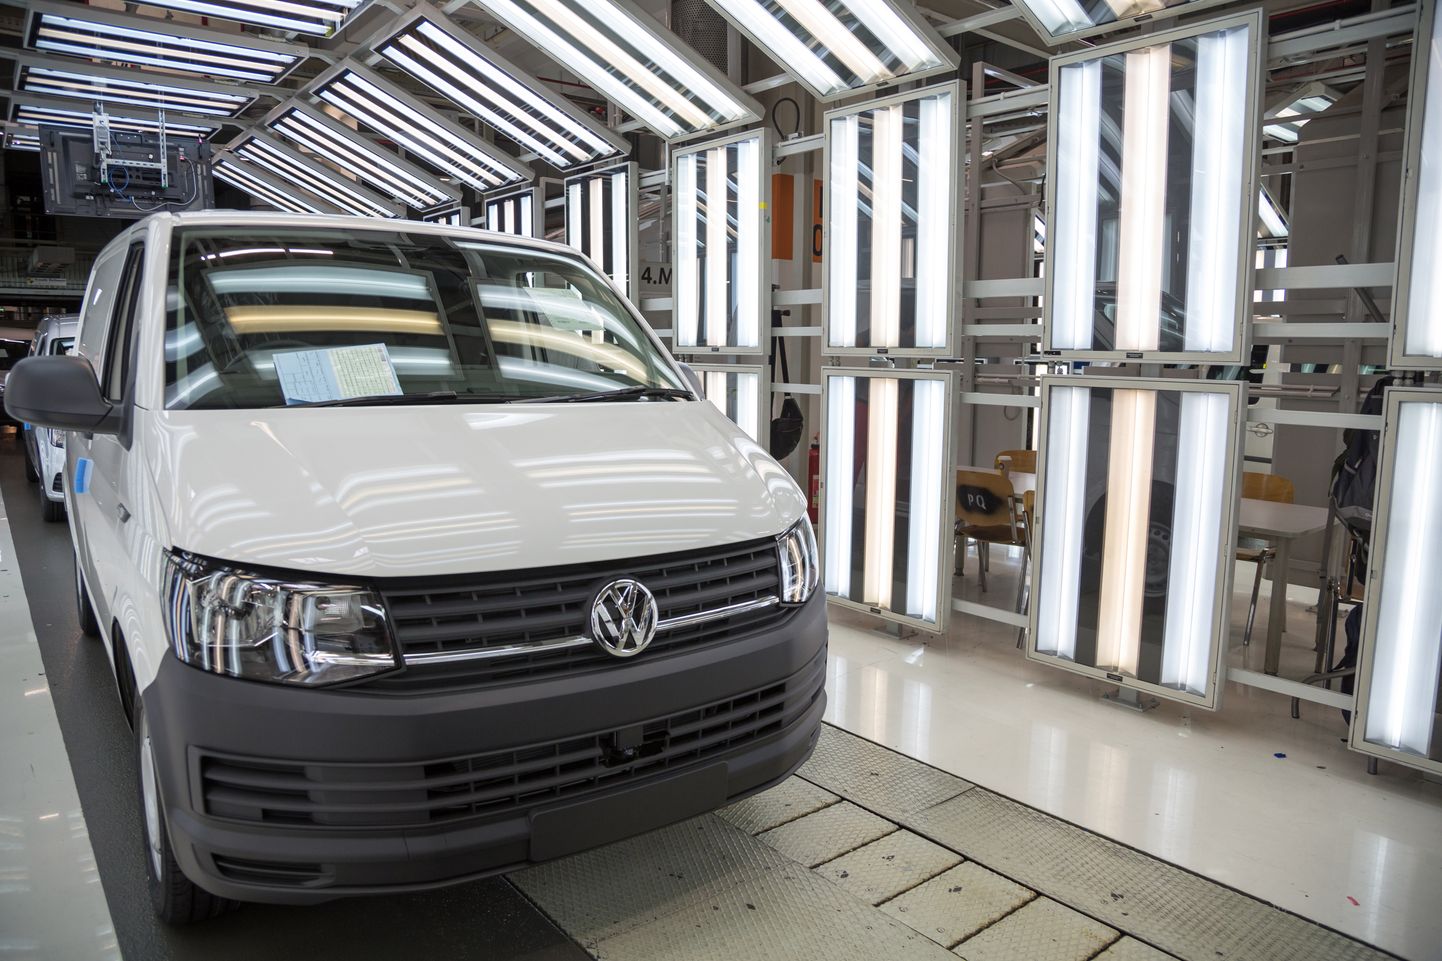 Eesti töömees ostis Rootsist Volkswagen Transporteri, mis talle palju tuska teeb.